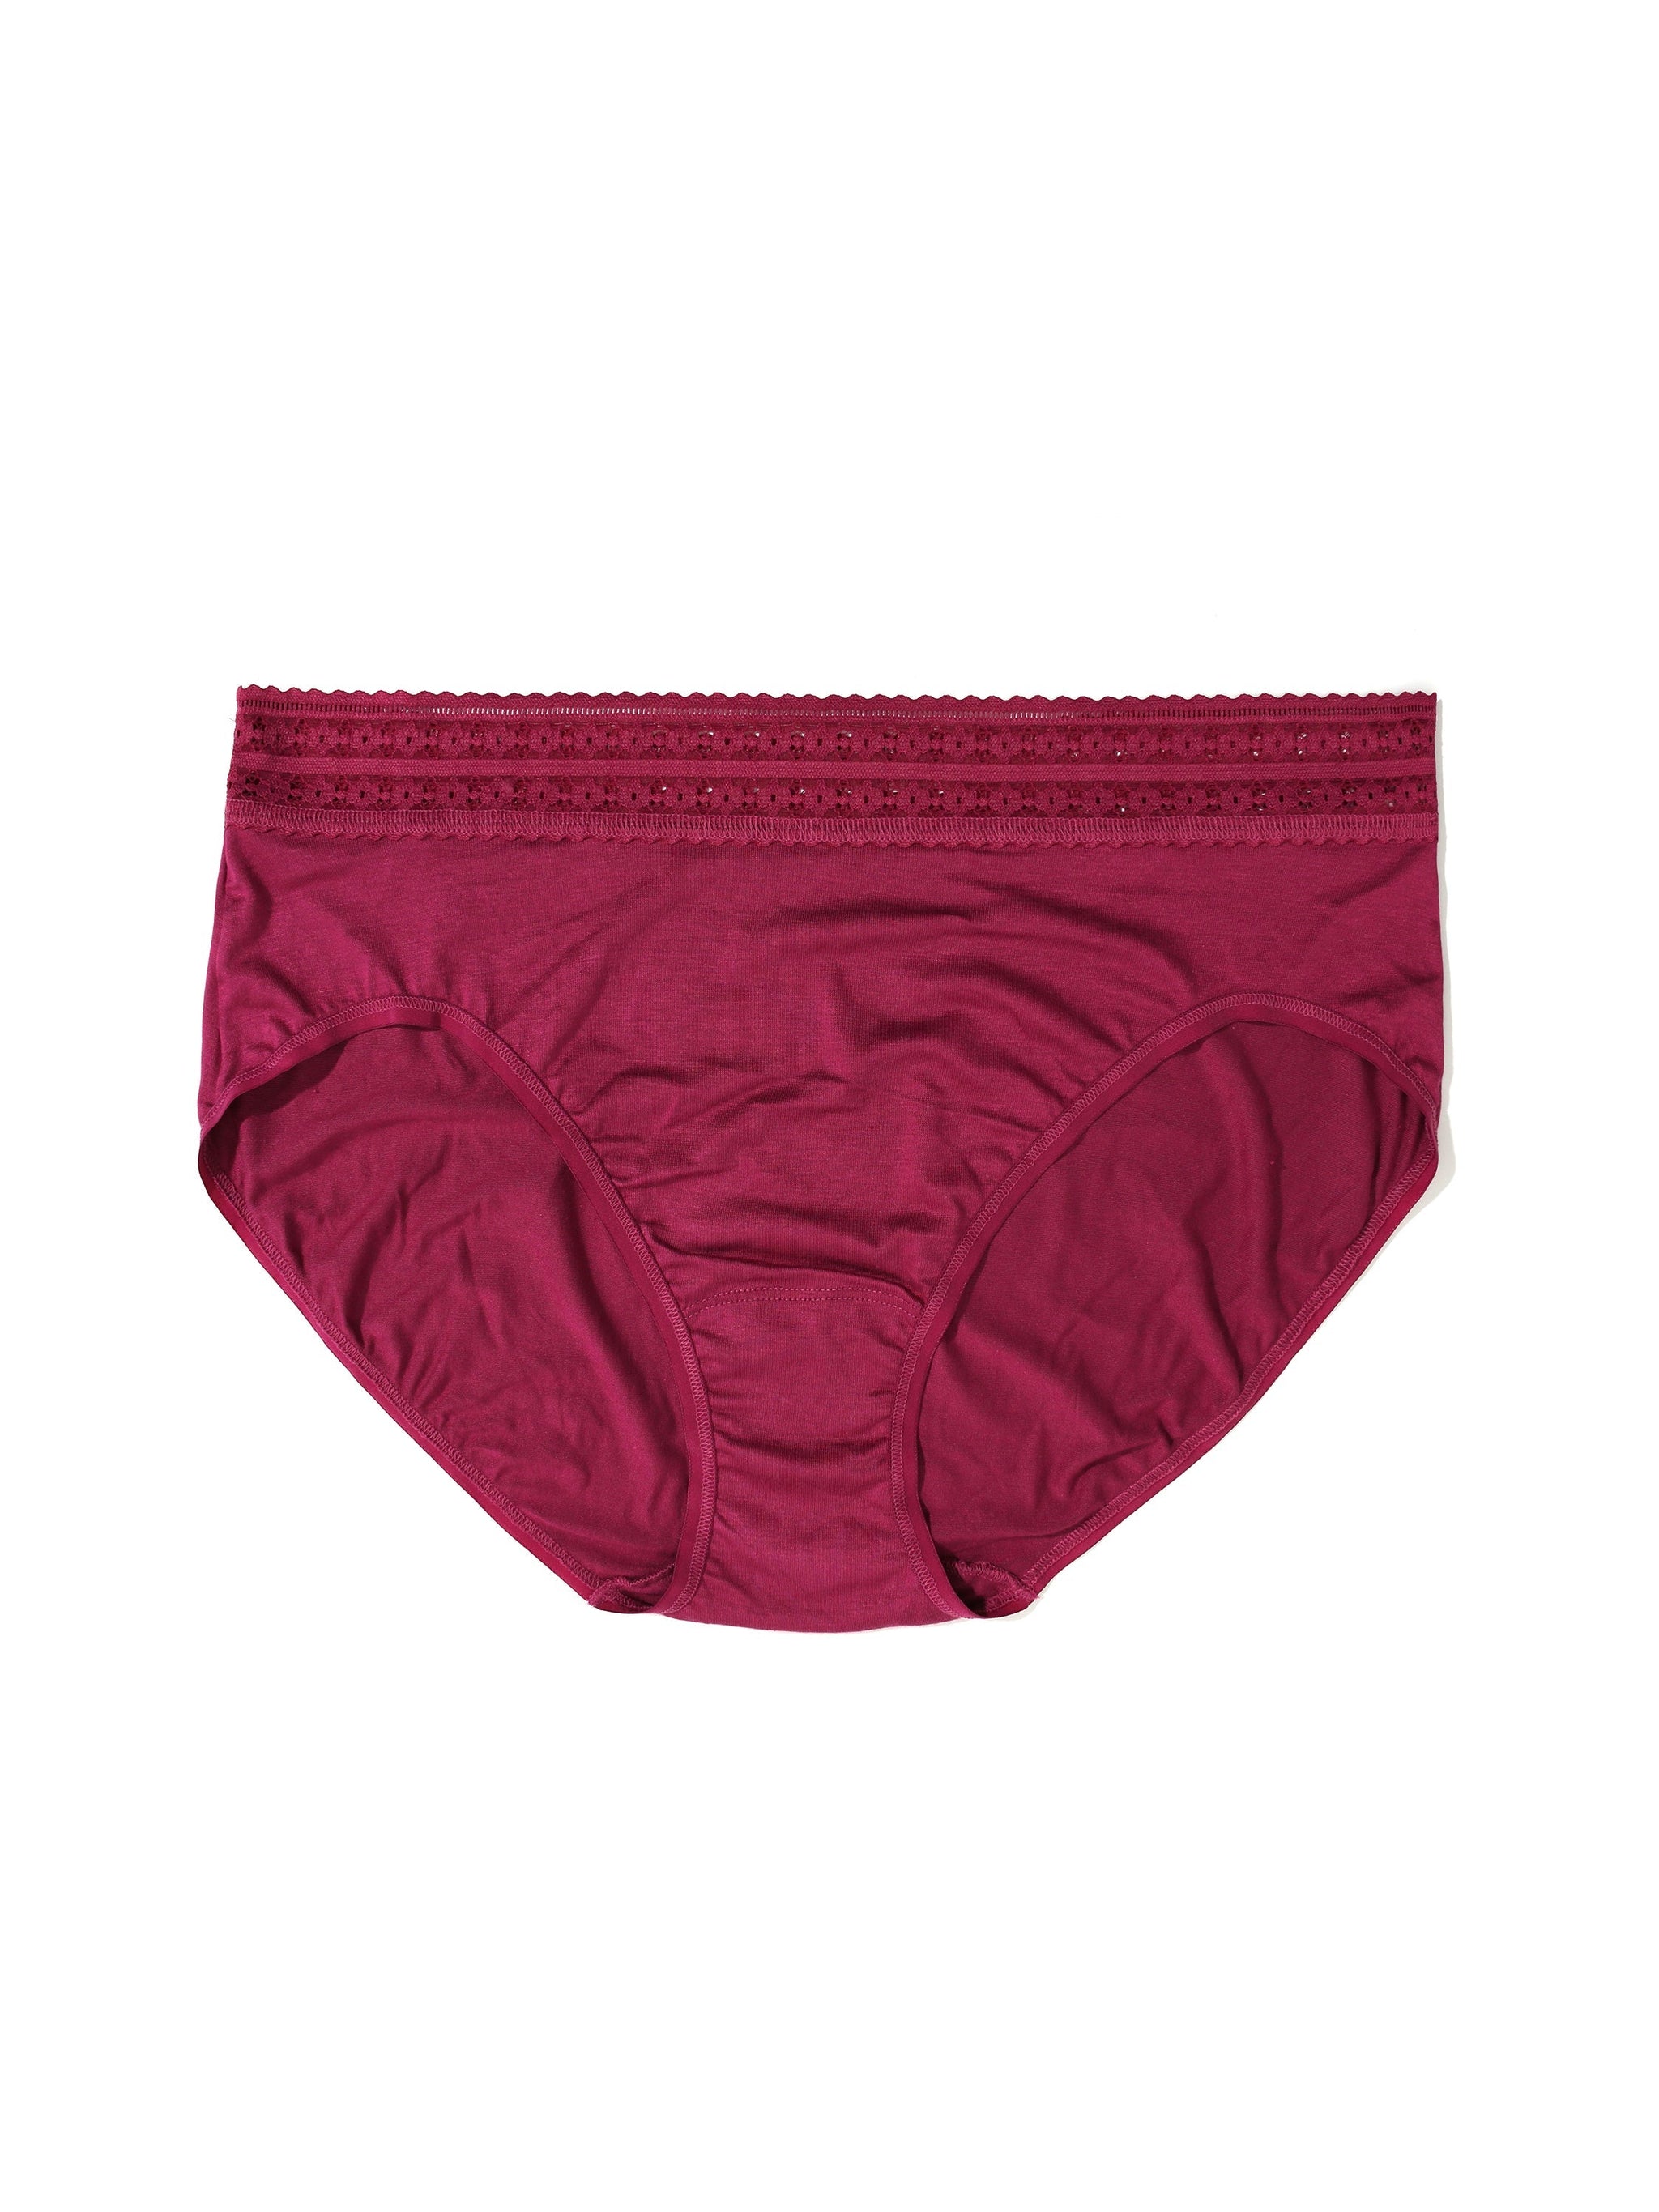 Purple Underwear & Panties For Plus Size Women